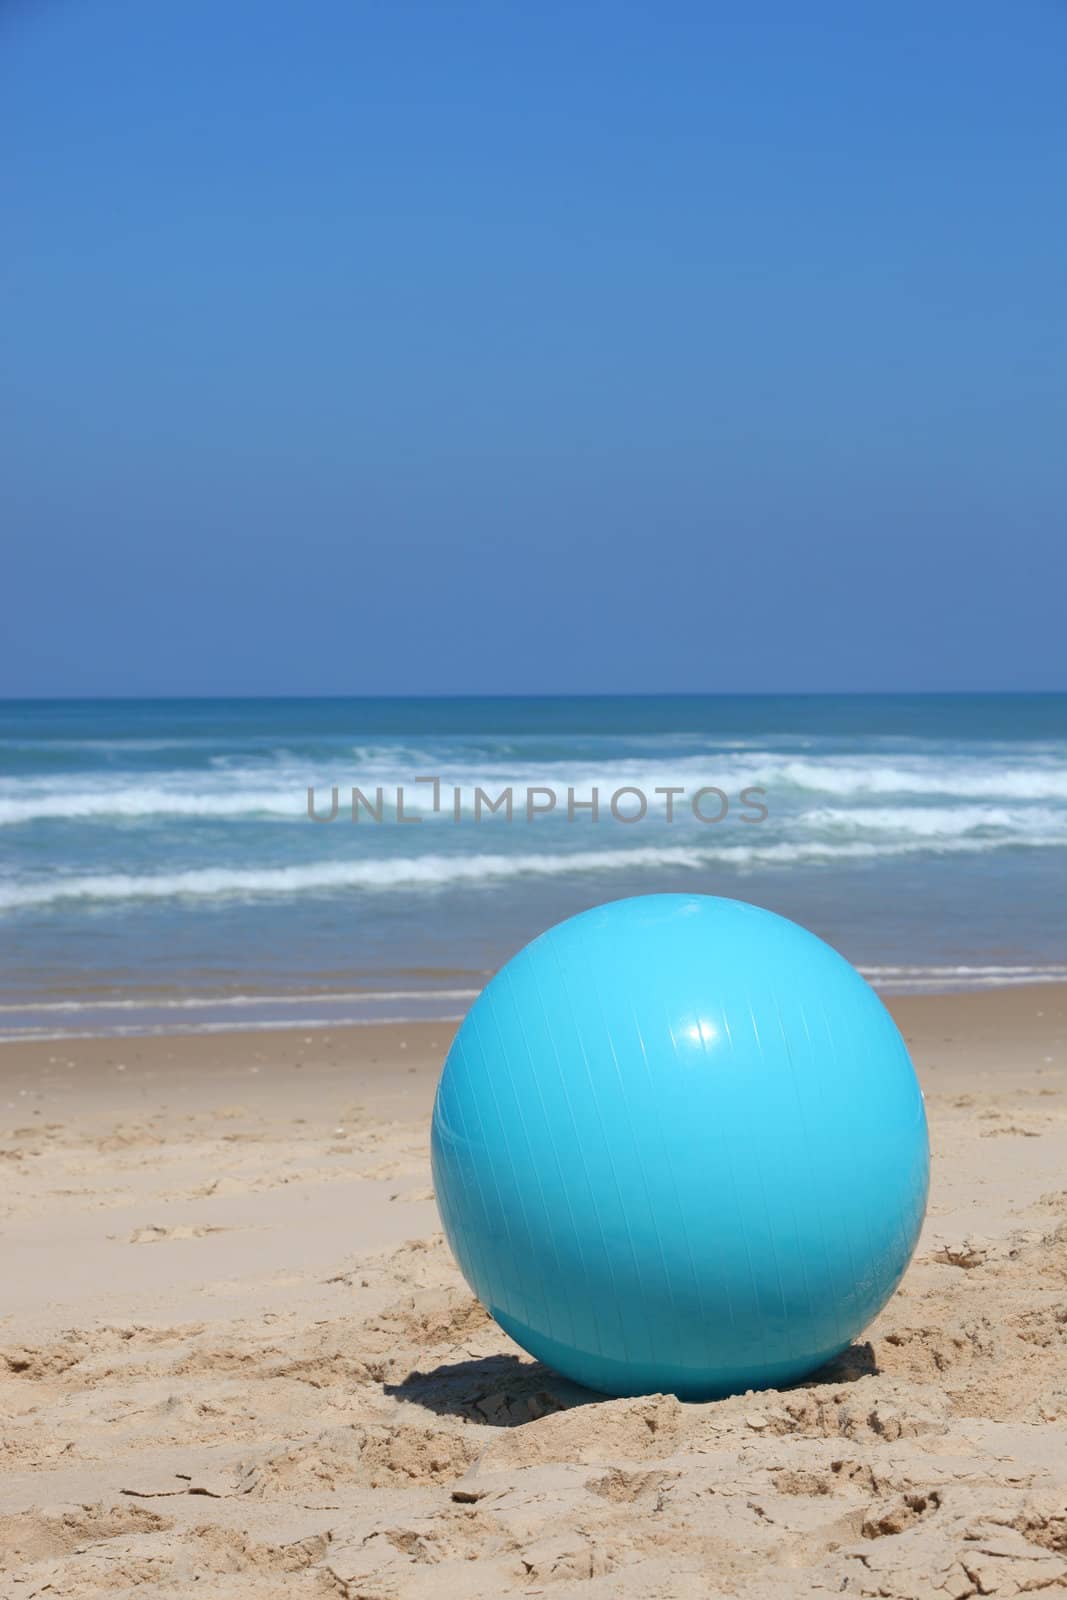 Ball left on a beach by phovoir